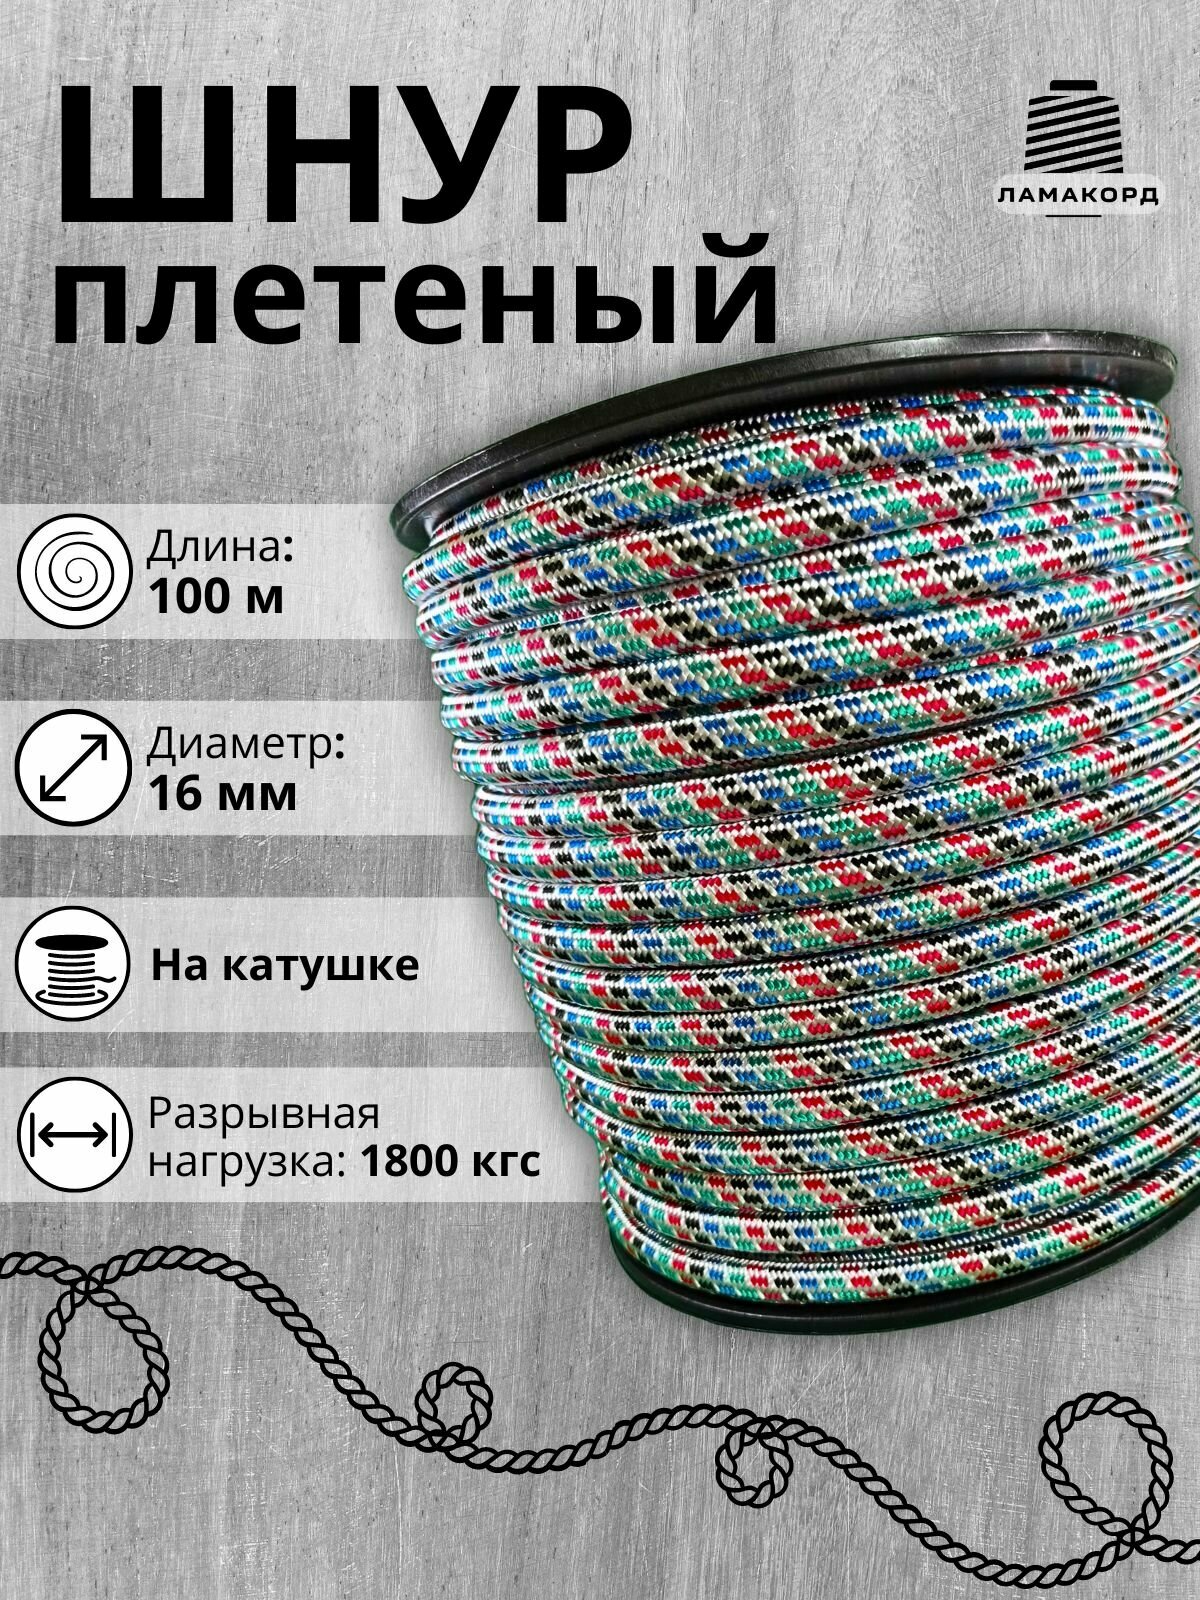 Шнур/Веревка полипропиленовая с сердечником 16 мм, 100 м, универсальная, высокопрочная, цветная